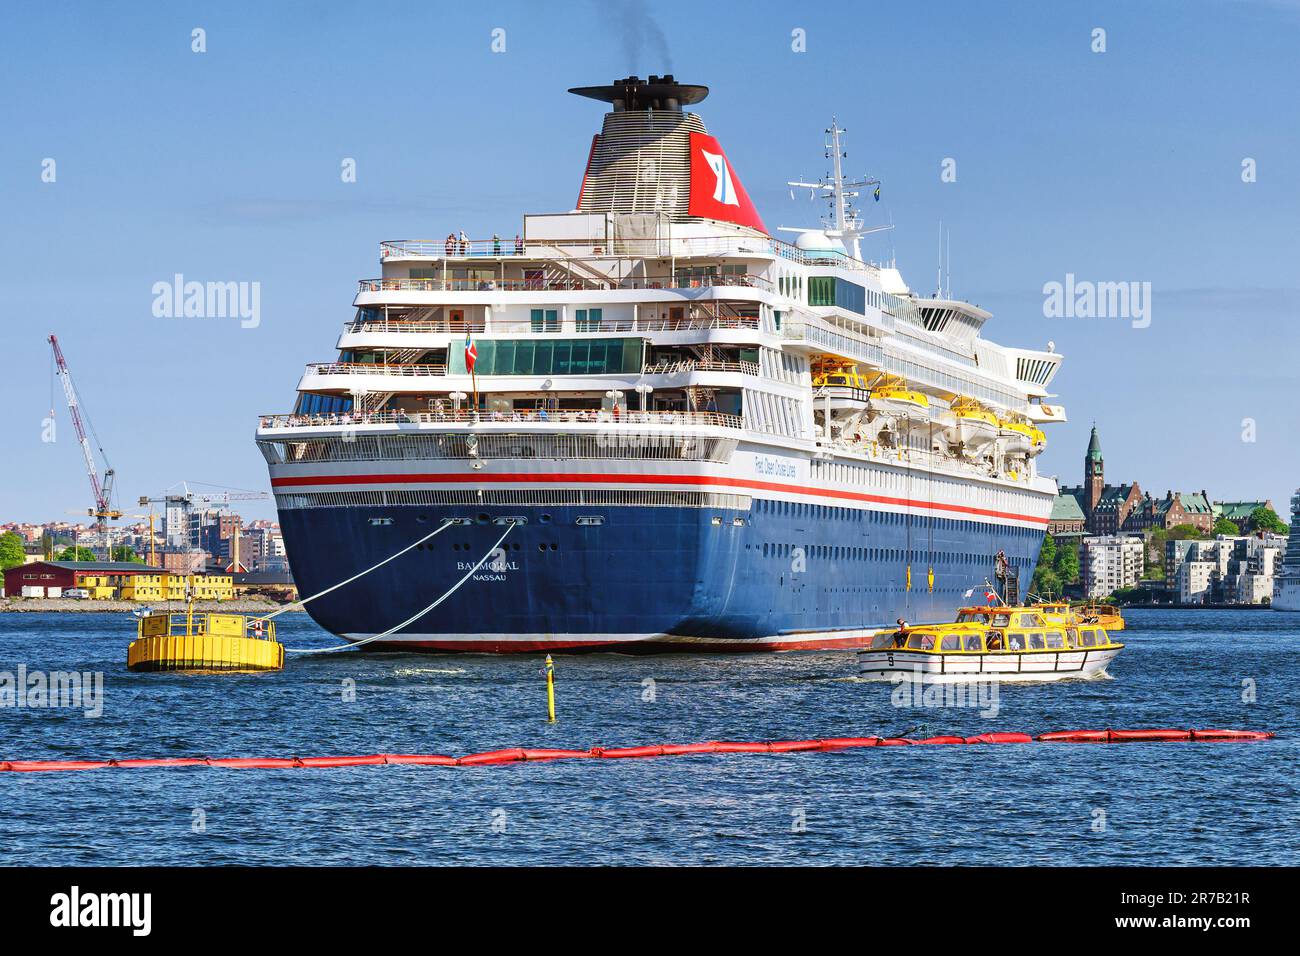 Le Fred. Le bateau de croisière Balmoral d'Olsen Cruise Lines s'est amarré à Stockholm, en Suède. Banque D'Images